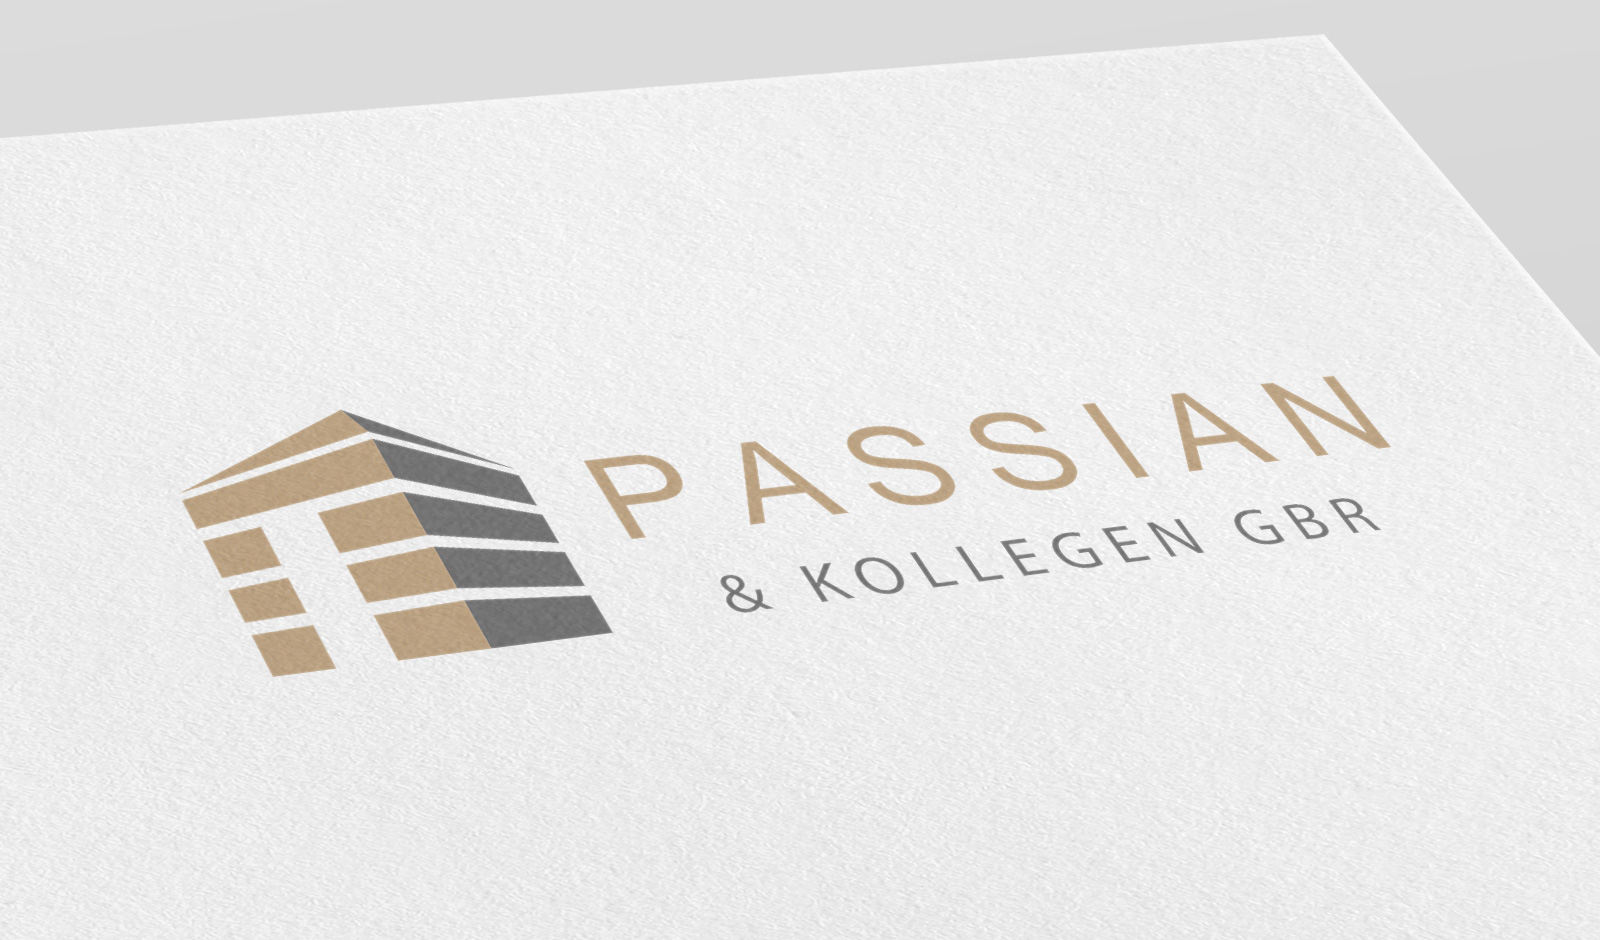 Logodesign für Anwaltskanzlei Passian & Kollegen GbR in Straubing